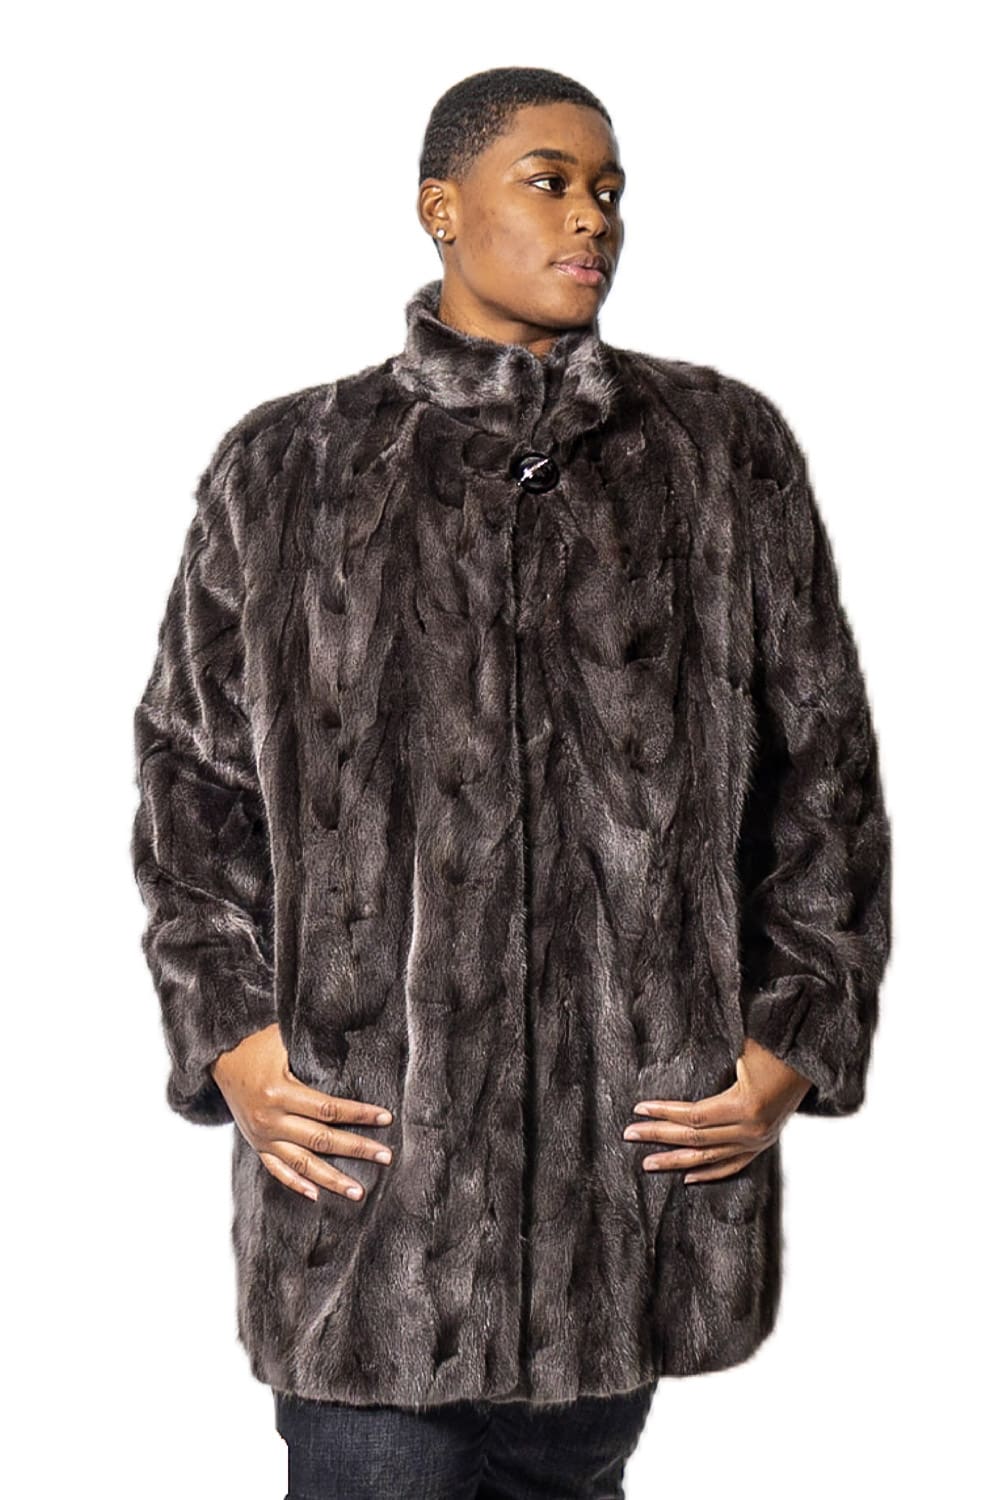 Ugent Furs Mink Fur Coat